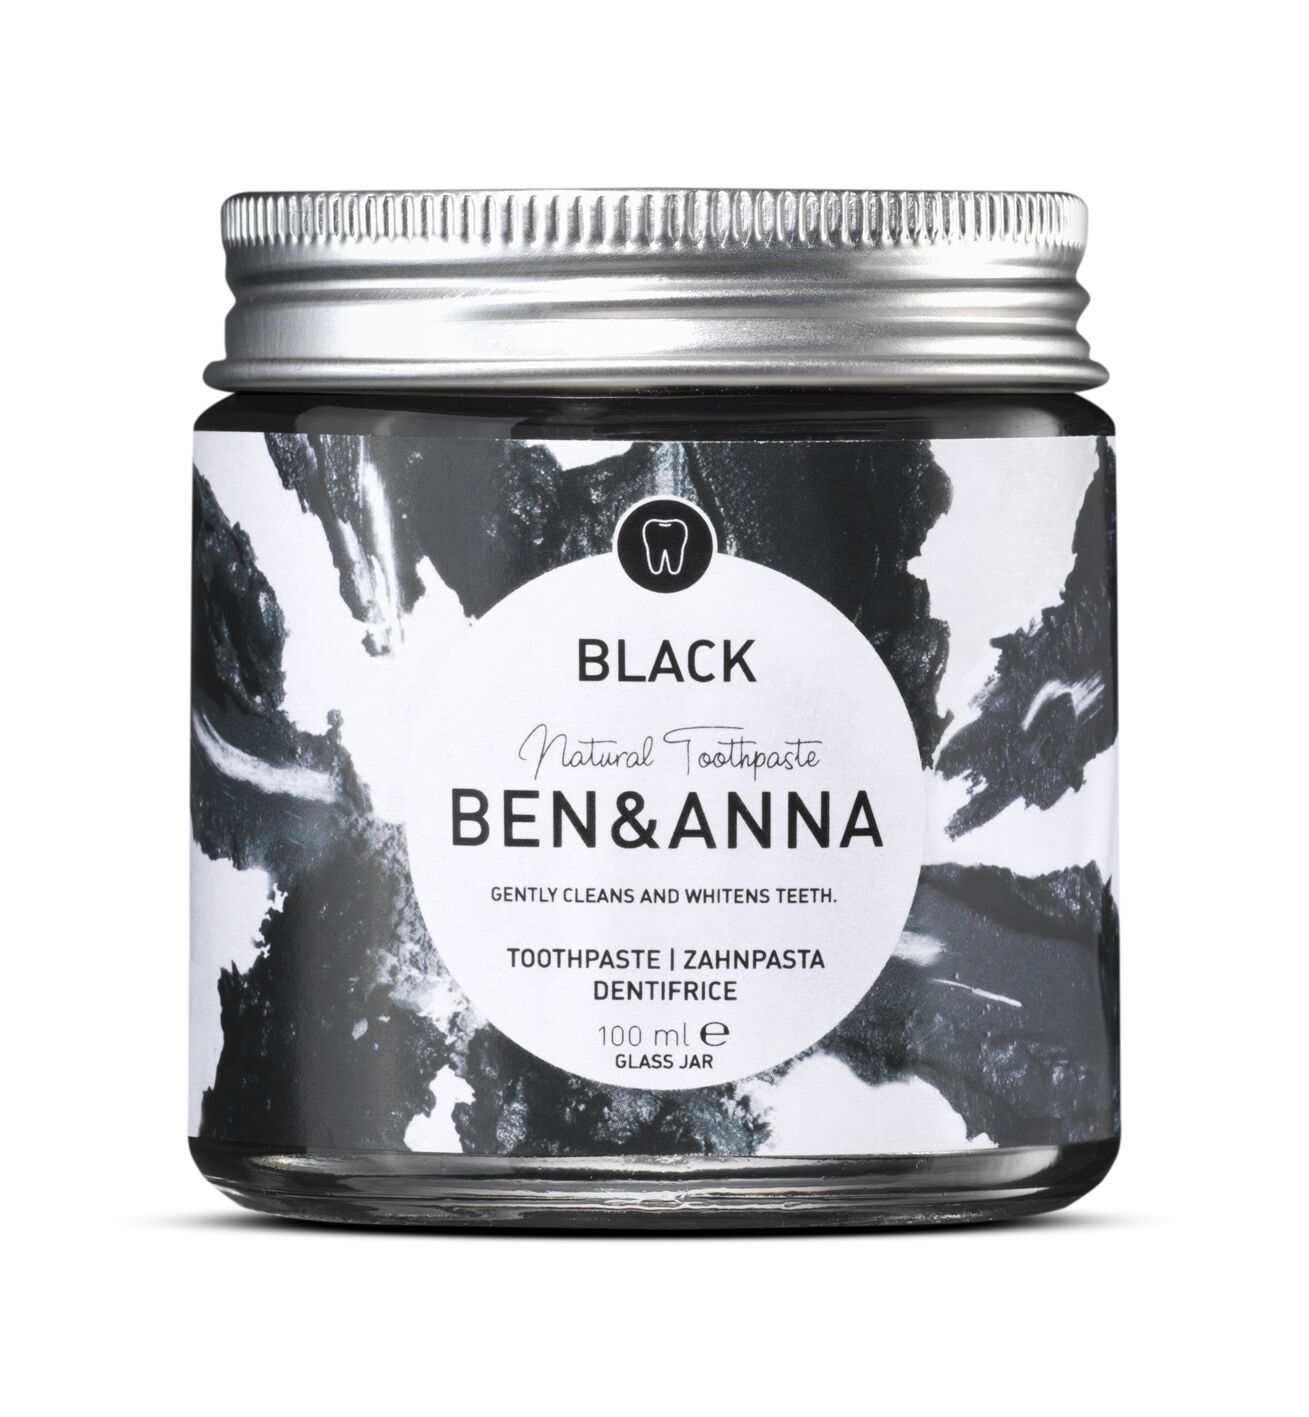 Ben&Anna – Pasta Dentifricia Black al carbone attivo